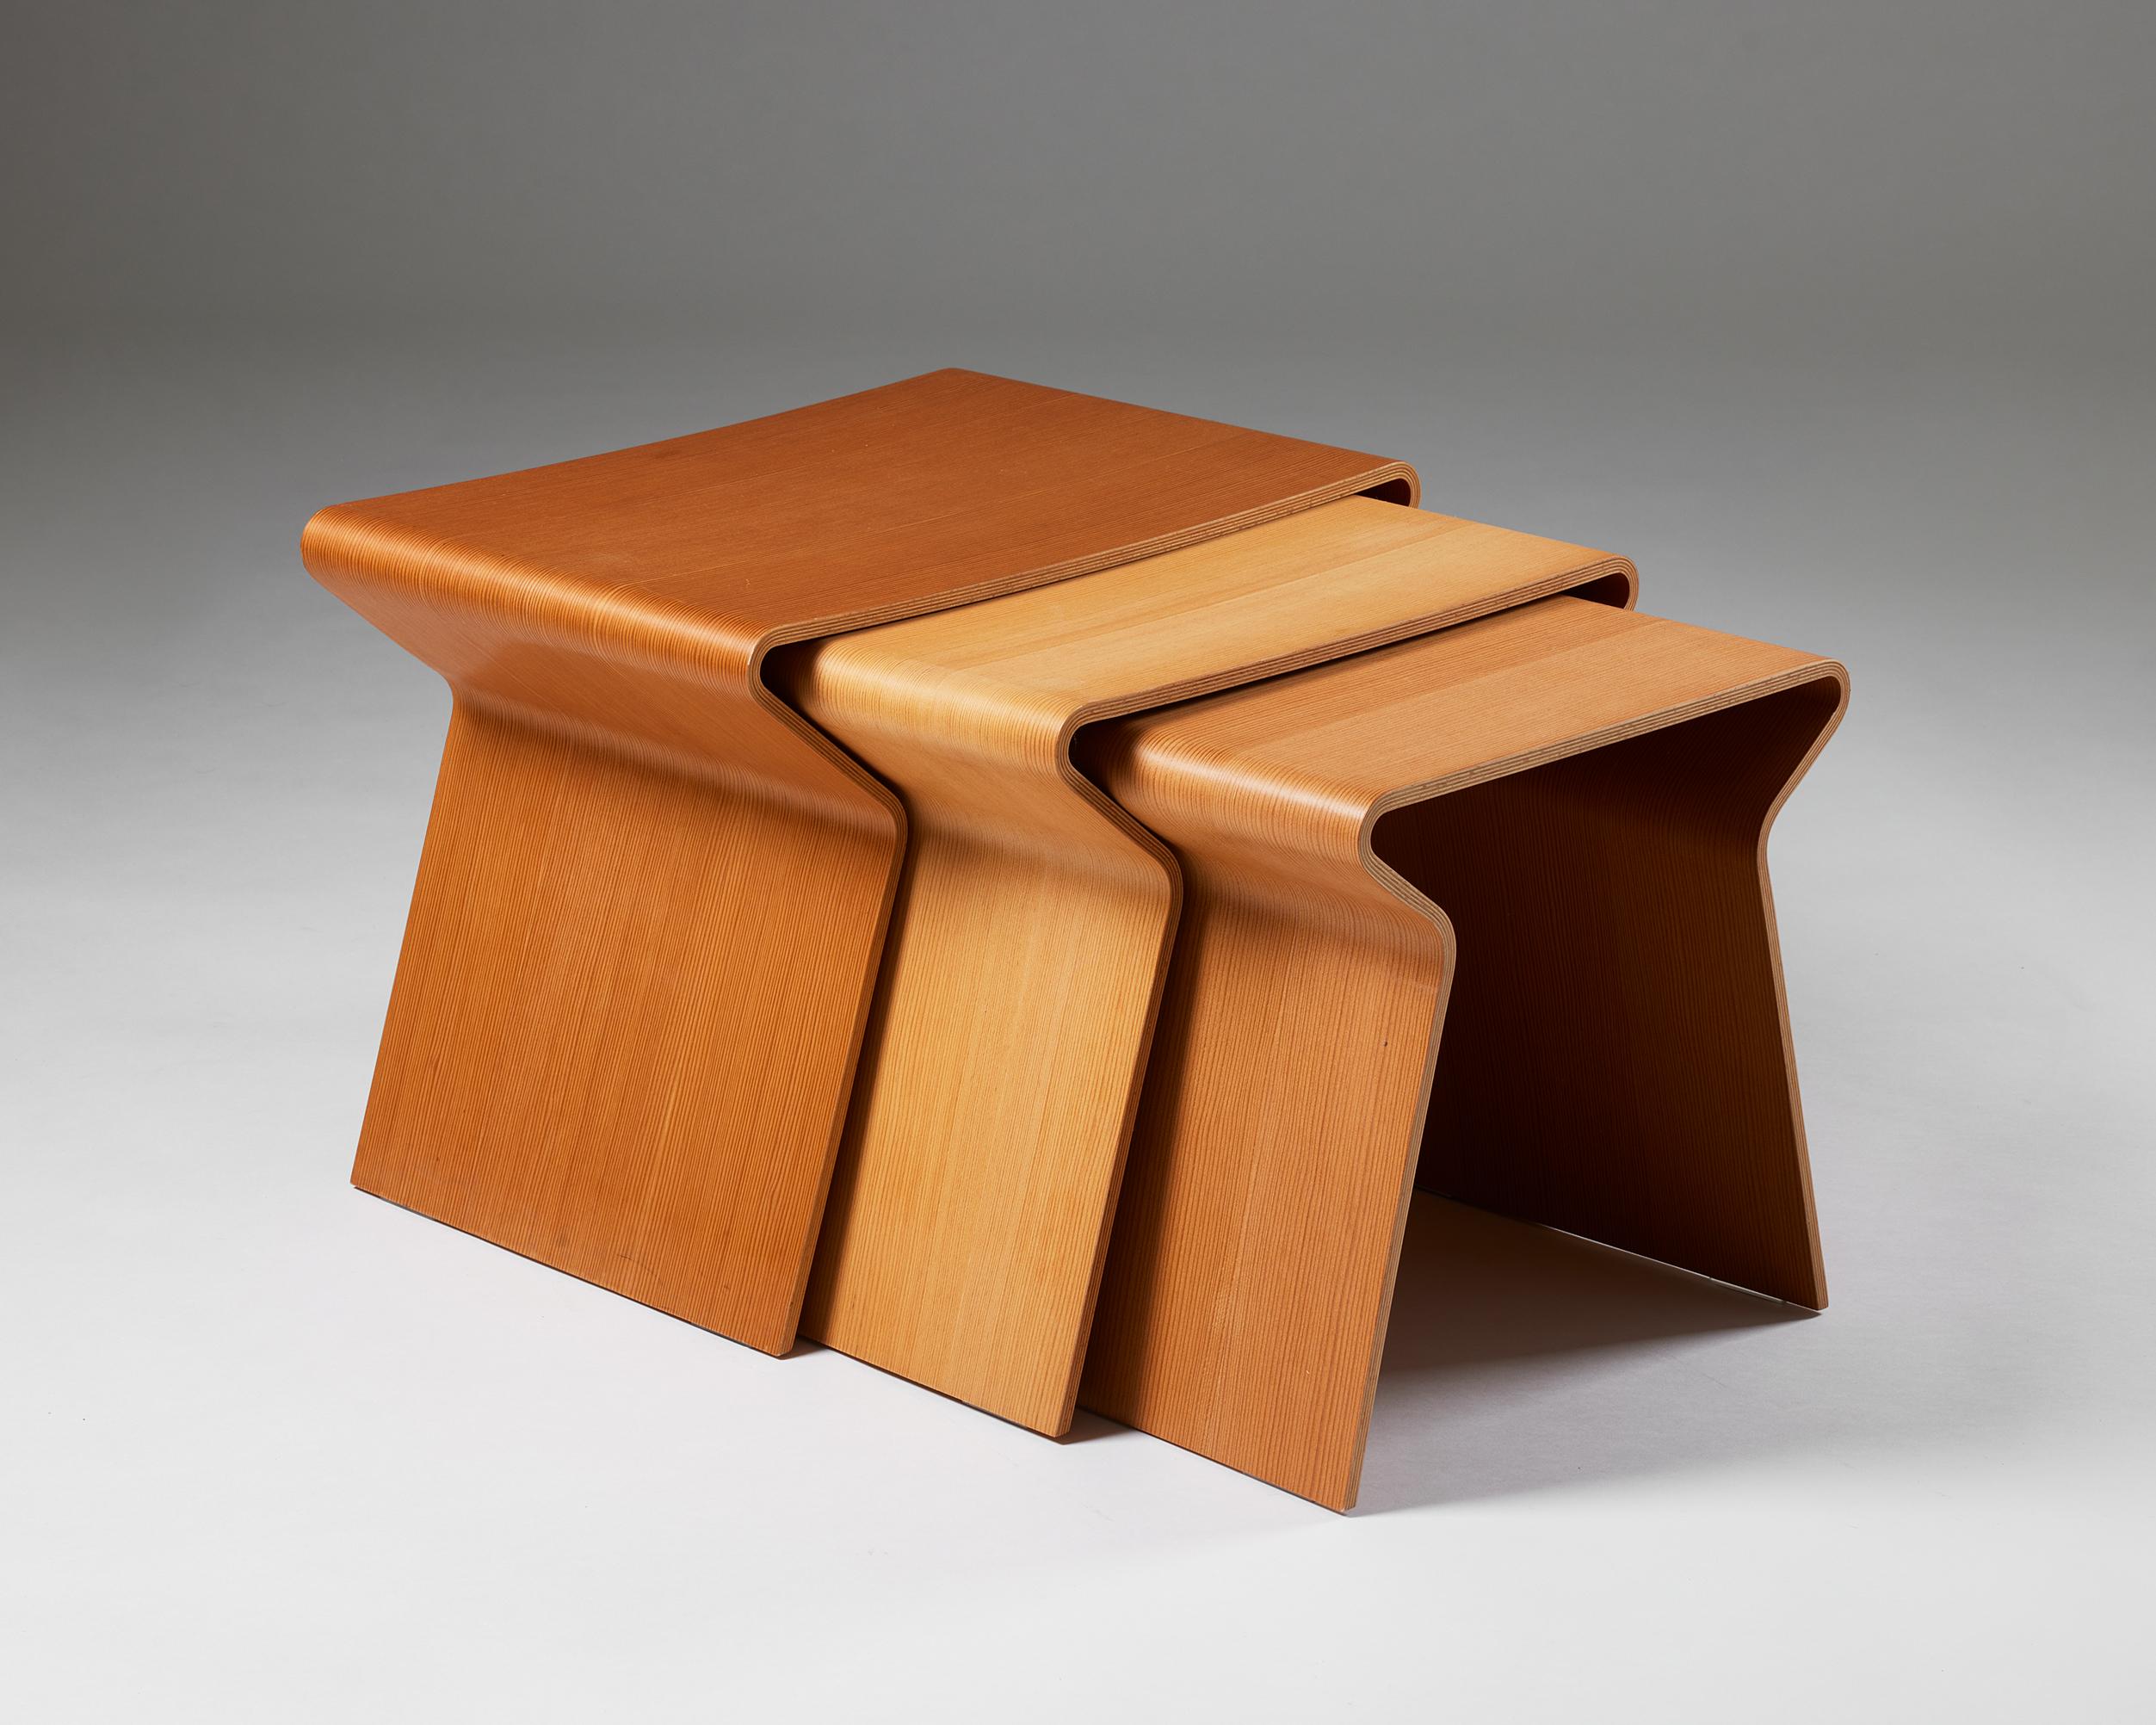 Set aus drei Tischen, entworfen von Grete Jalk für Lange Production,
Dänemark, 1963.

Das Design stammt von Grete Jalk aus dem Jahr 1963, und dieses Set wurde 2008 von Lange in einer limitierten Auflage